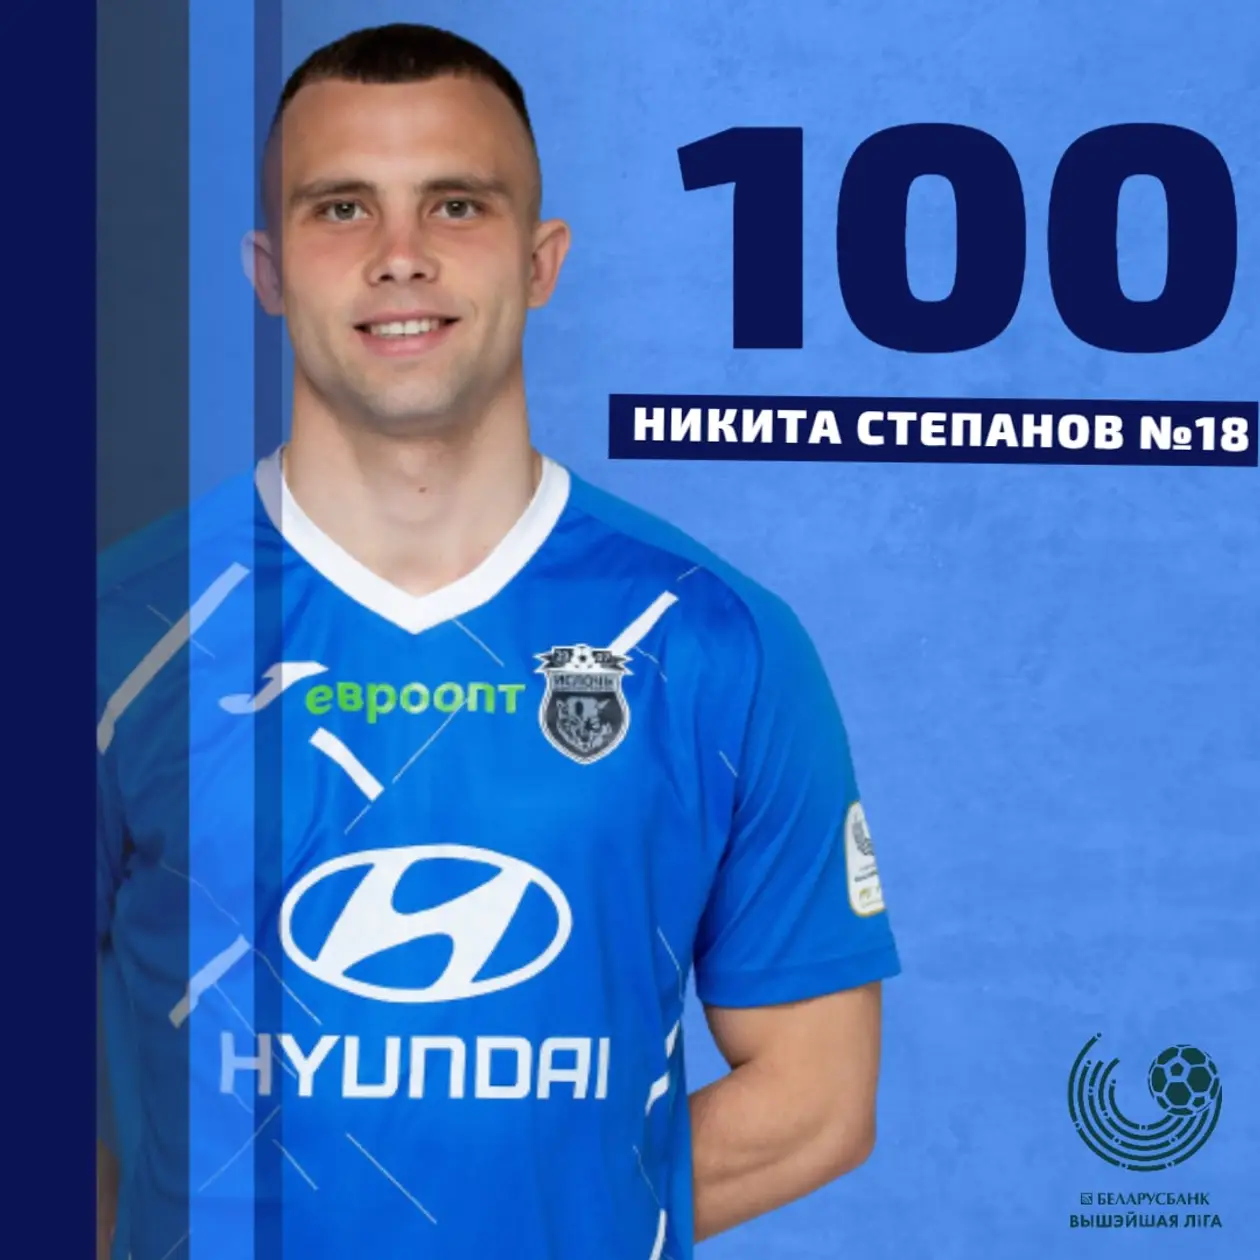 Никита Степанов провел сотый матч в высшей лиге